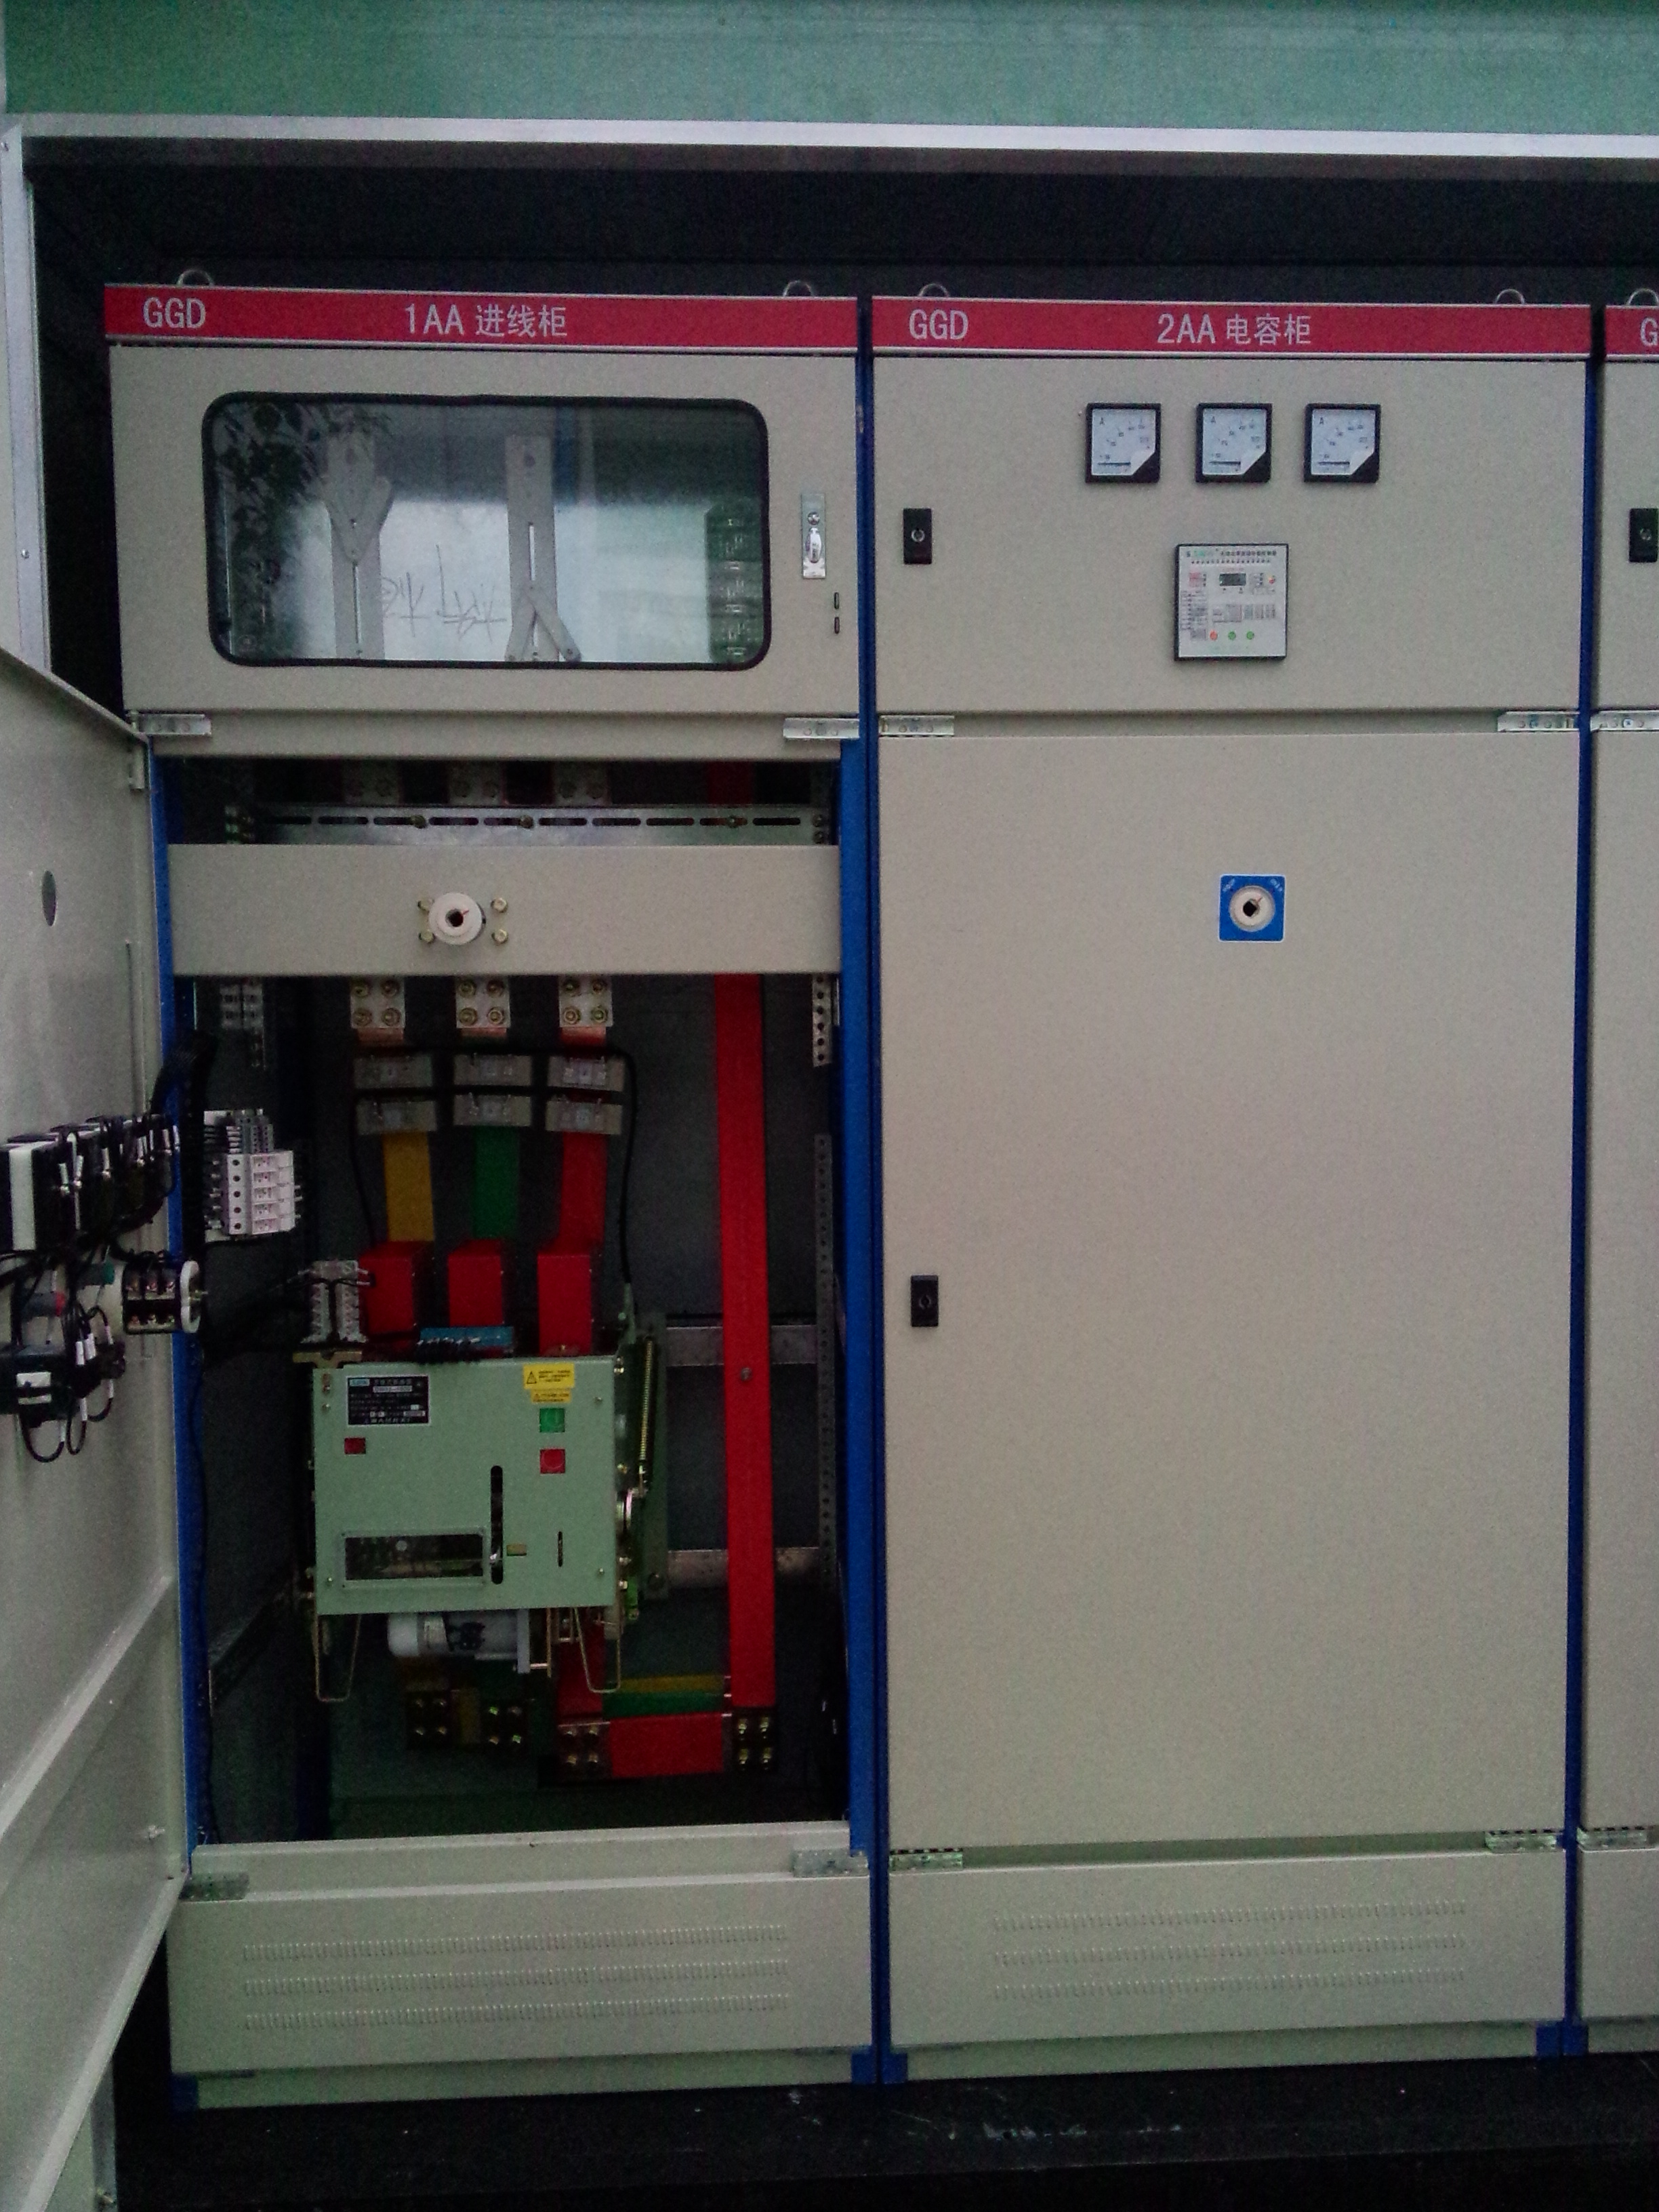 【电器柜】 高低压成套电器柜 低压成套电器柜 高压成套电器柜